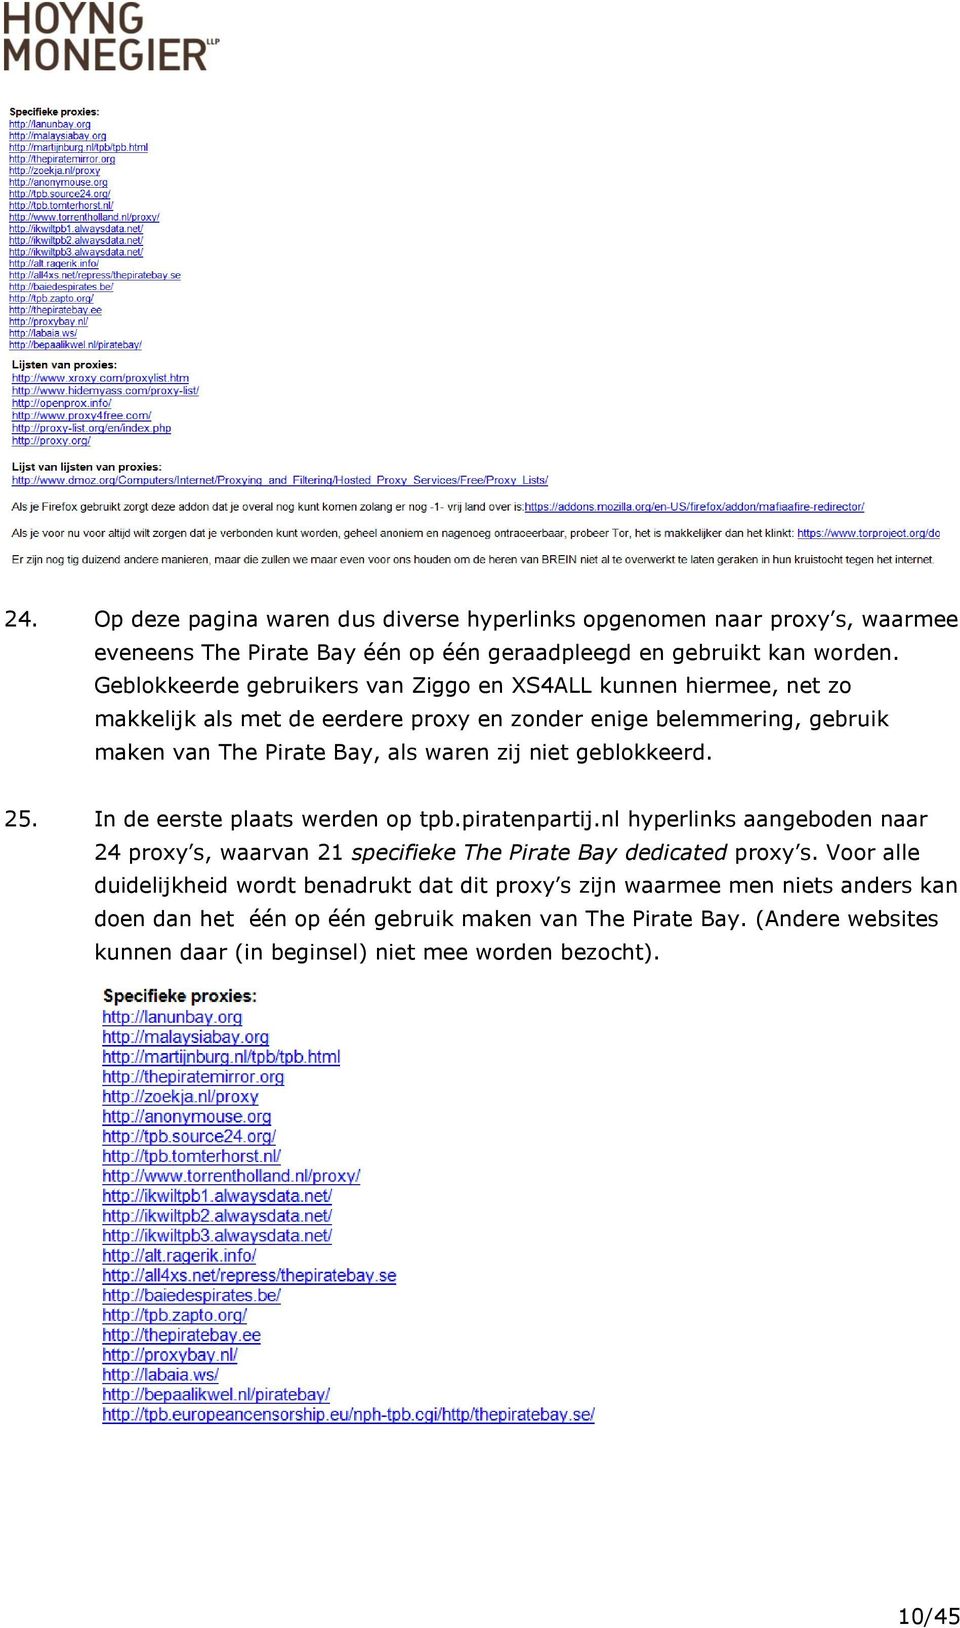 niet geblokkeerd. 25. In de eerste plaats werden op tpb.piratenpartij.nl hyperlinks aangeboden naar 24 proxy s, waarvan 21 specifieke The Pirate Bay dedicated proxy s.